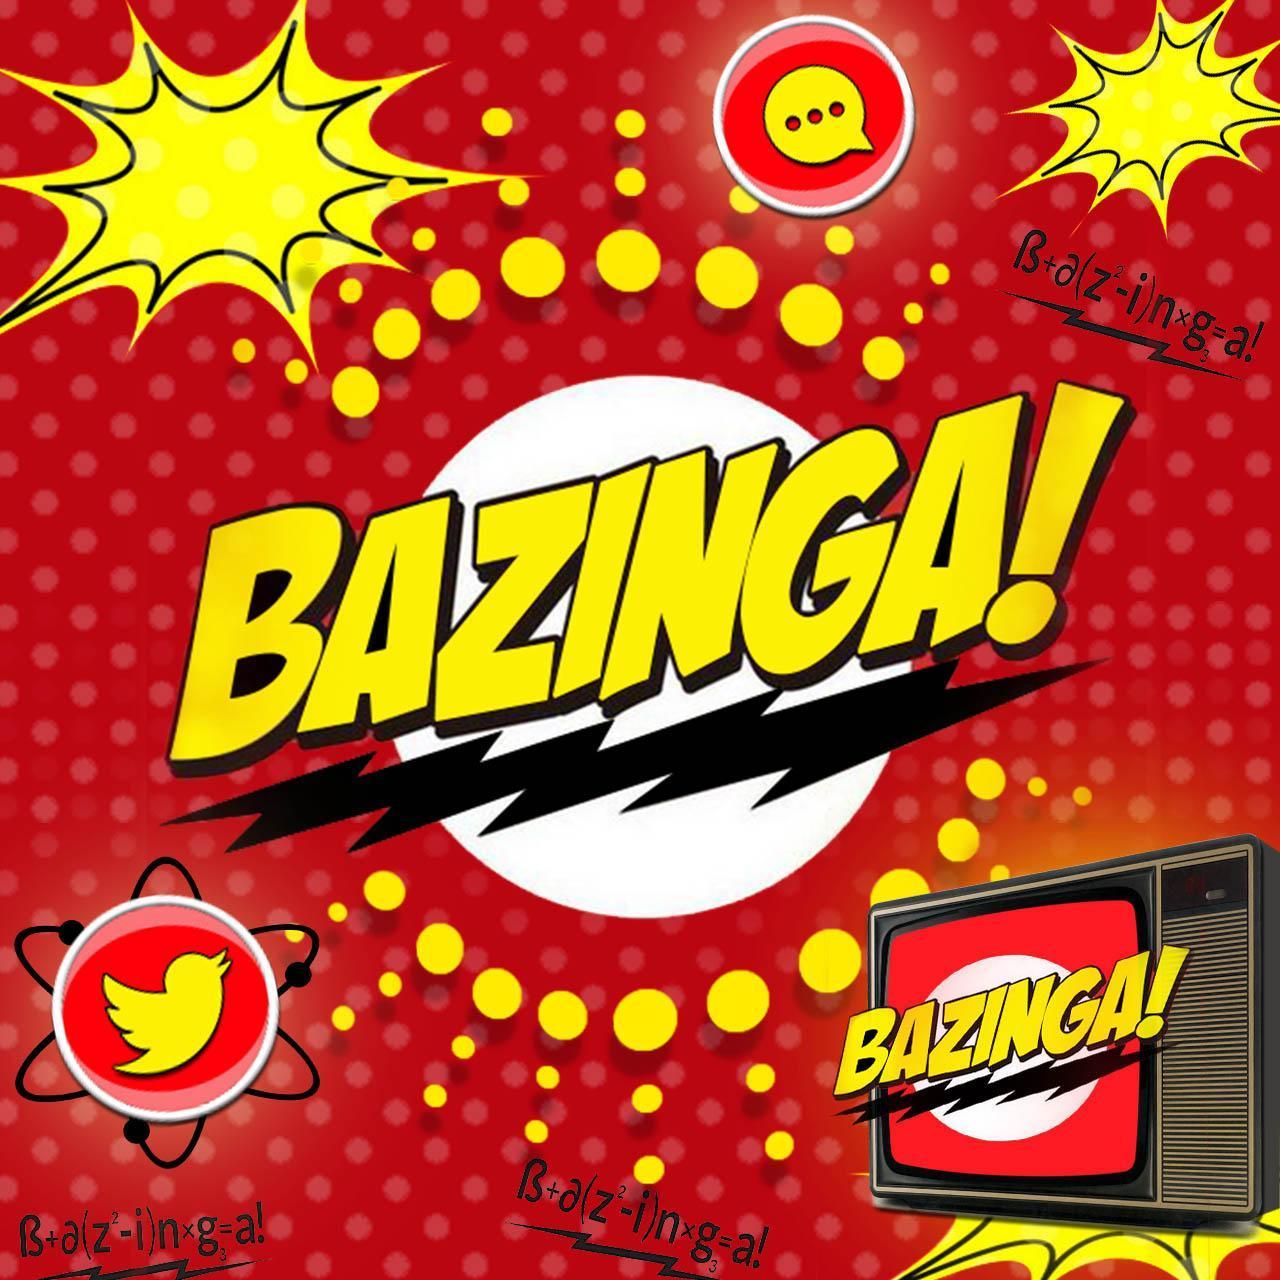 bazinga com